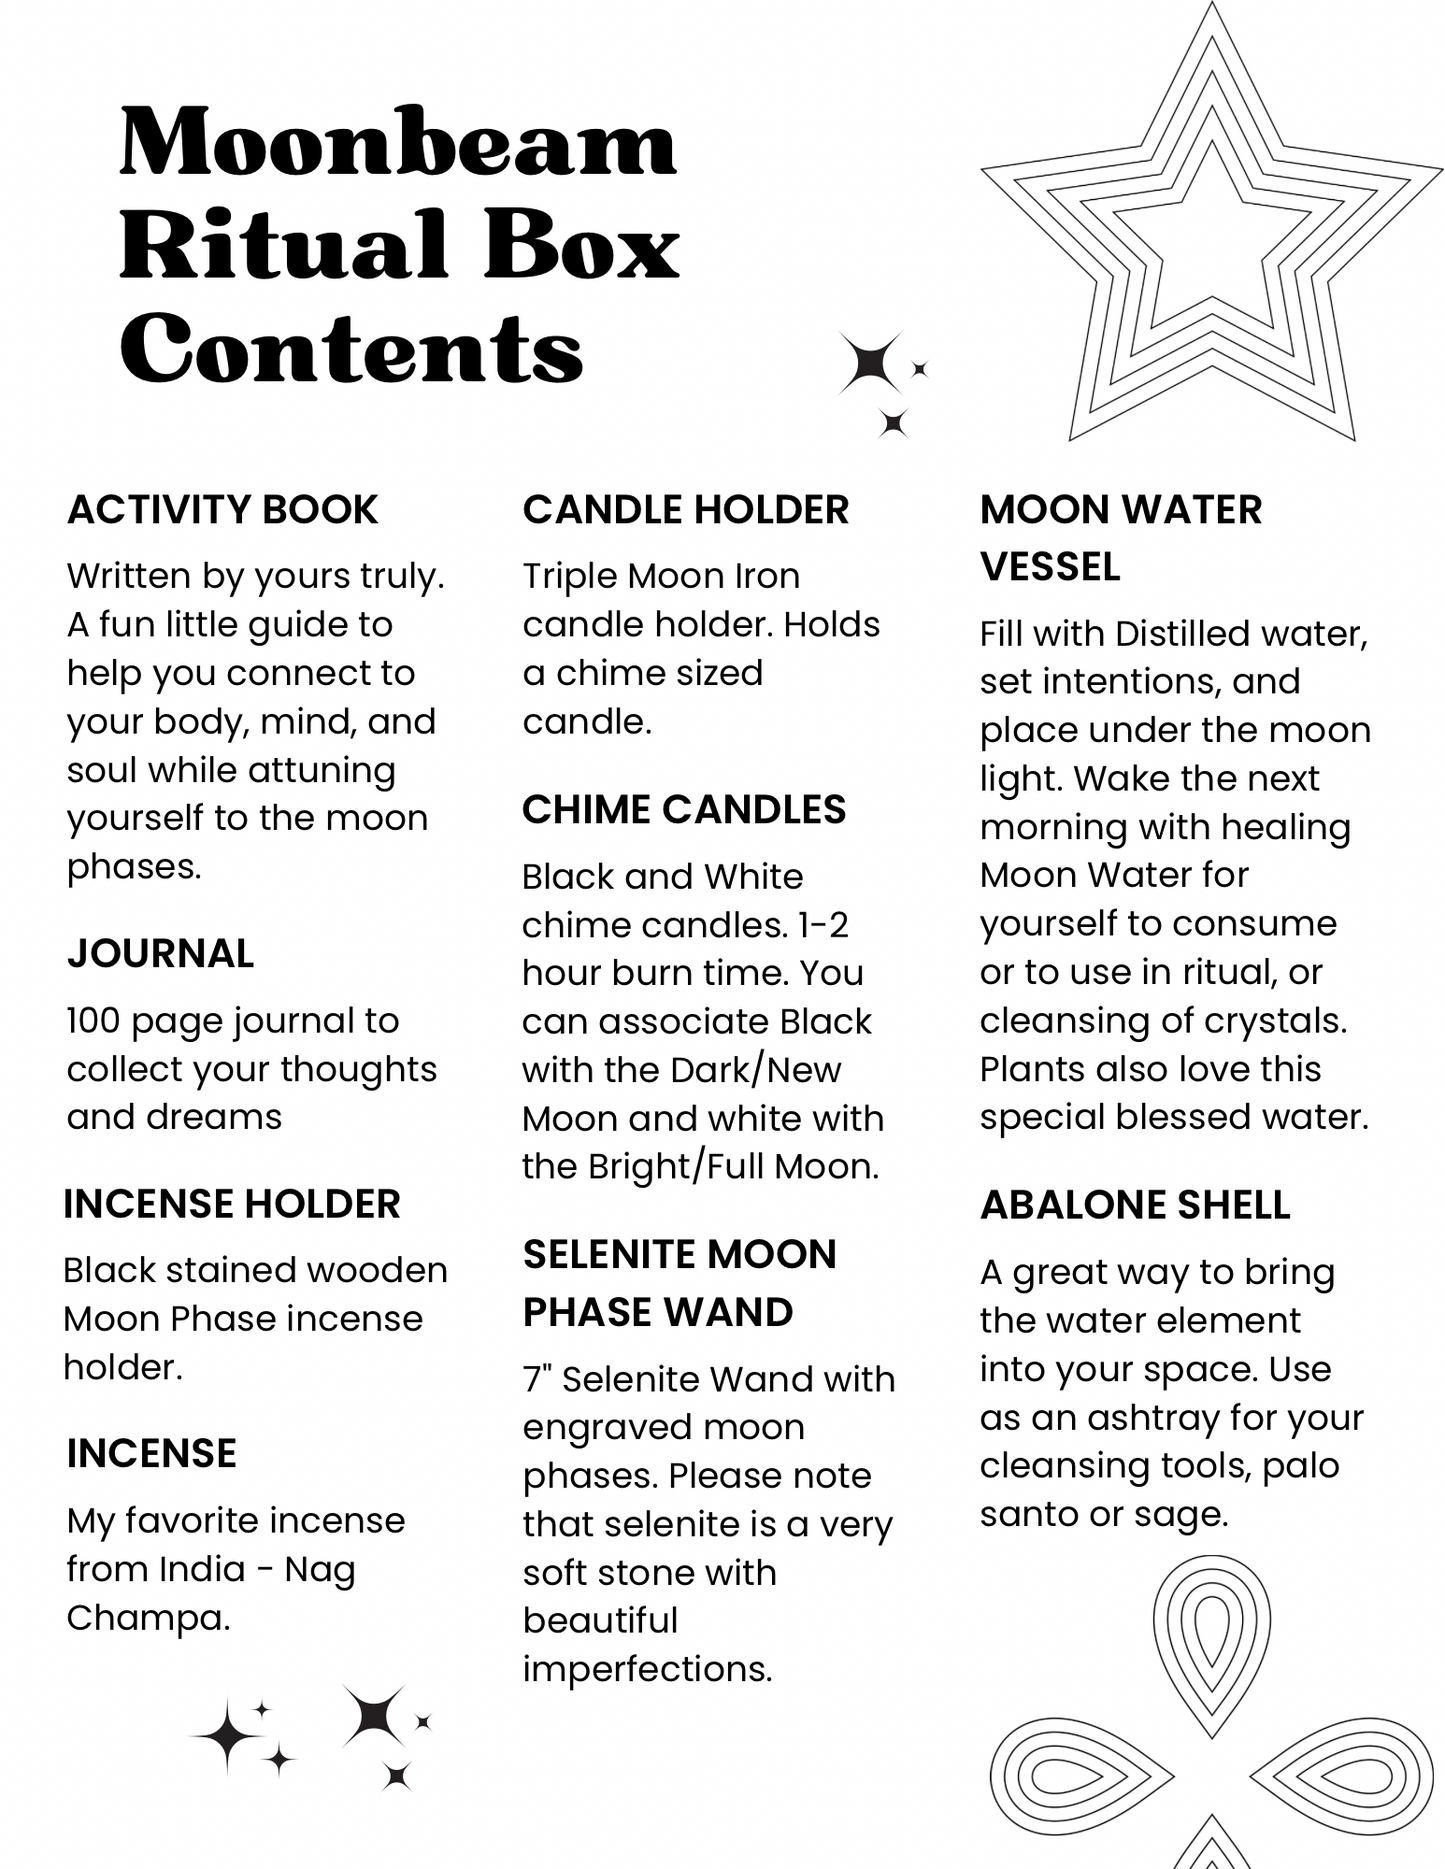 Moonbeam Ritual Box